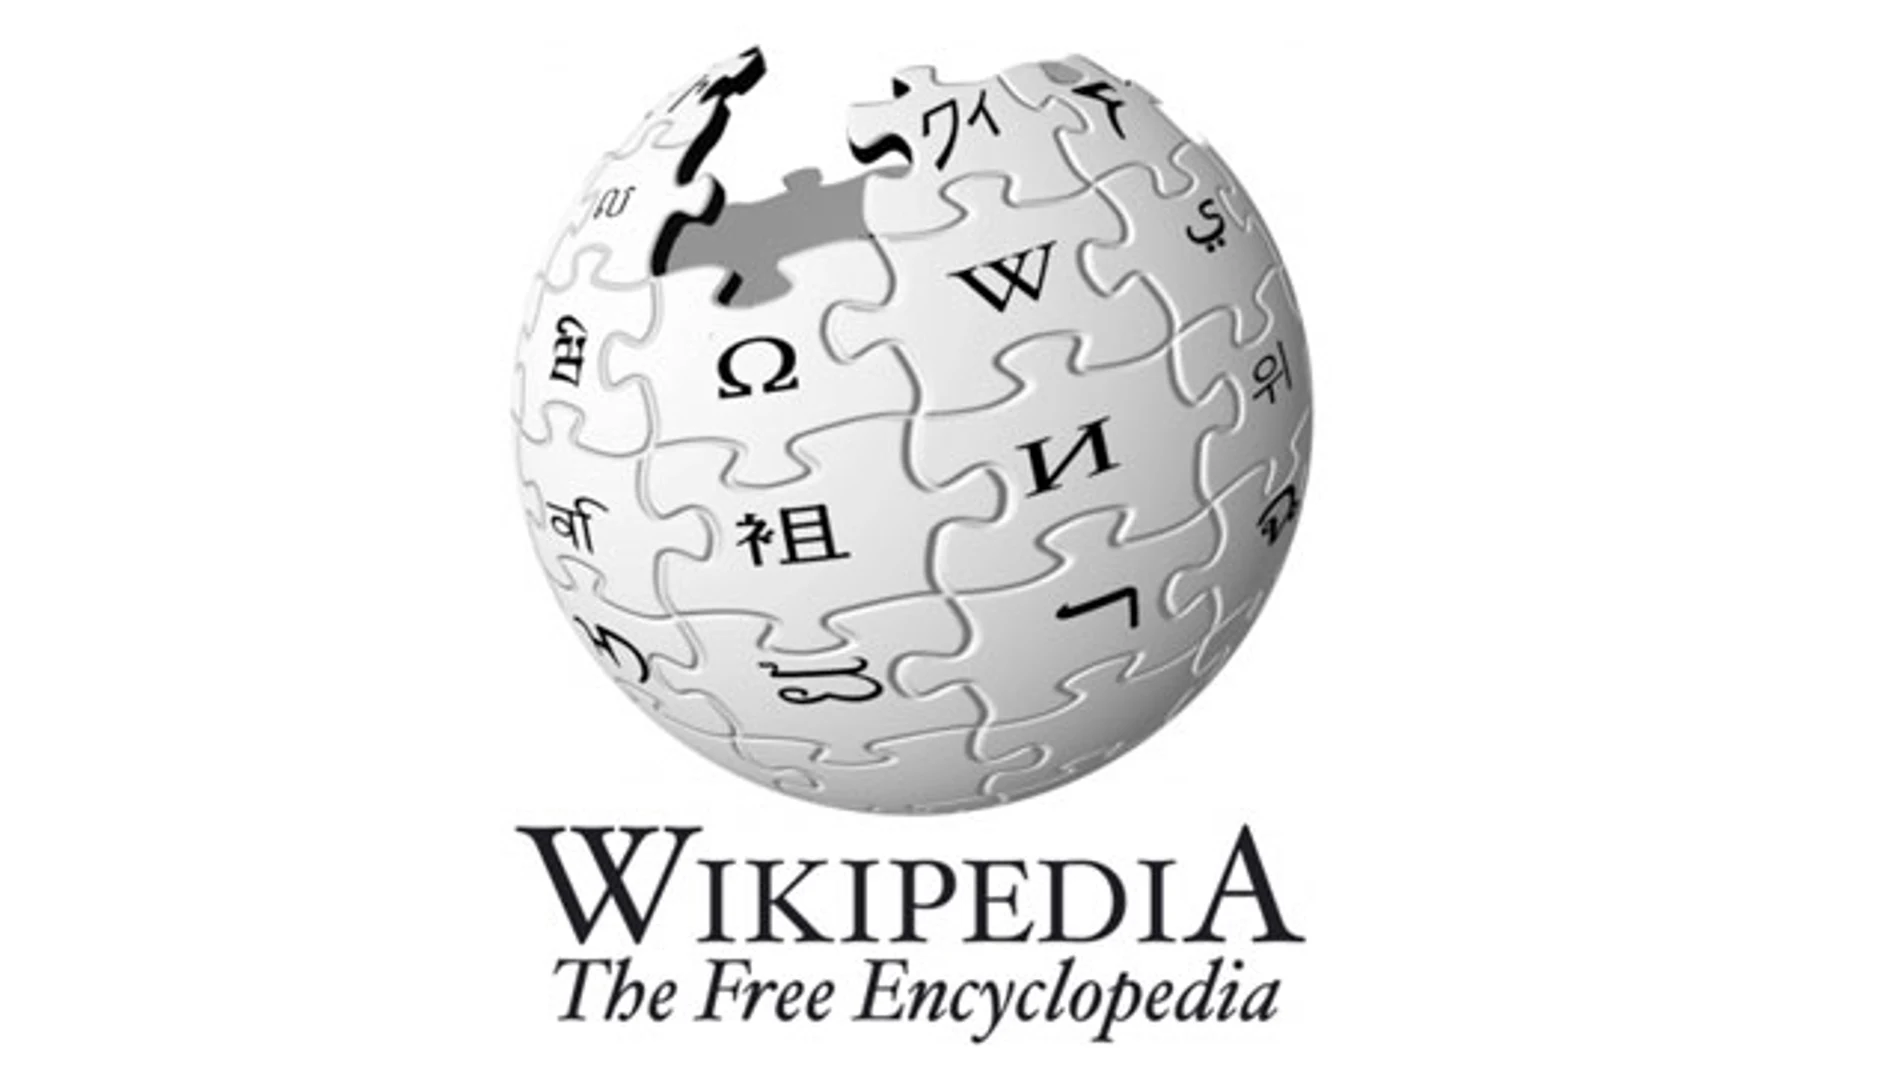 Wikipedia en español cuenta con 1 257 840 artículos